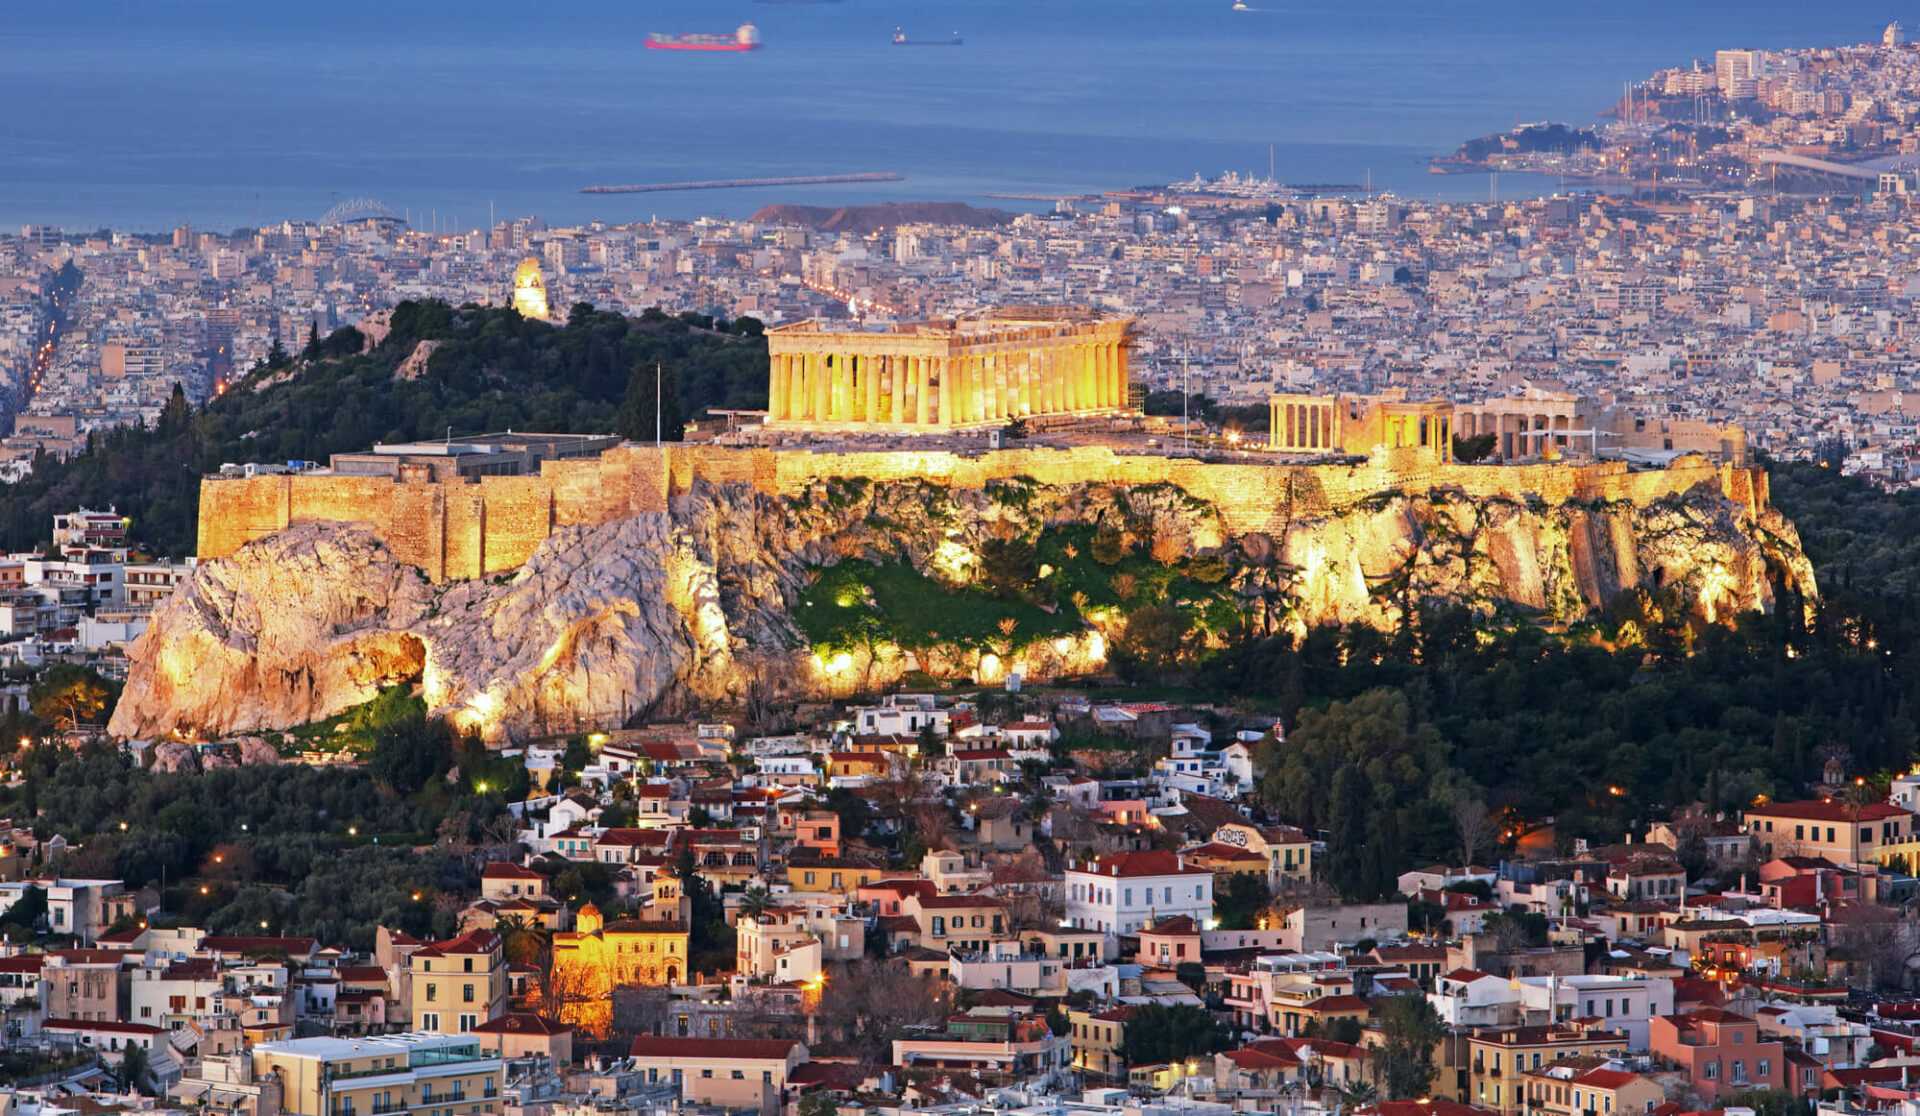 טיולים באתונה והסביבה - את הטיולים האלו אתם חייבים לבדוק!